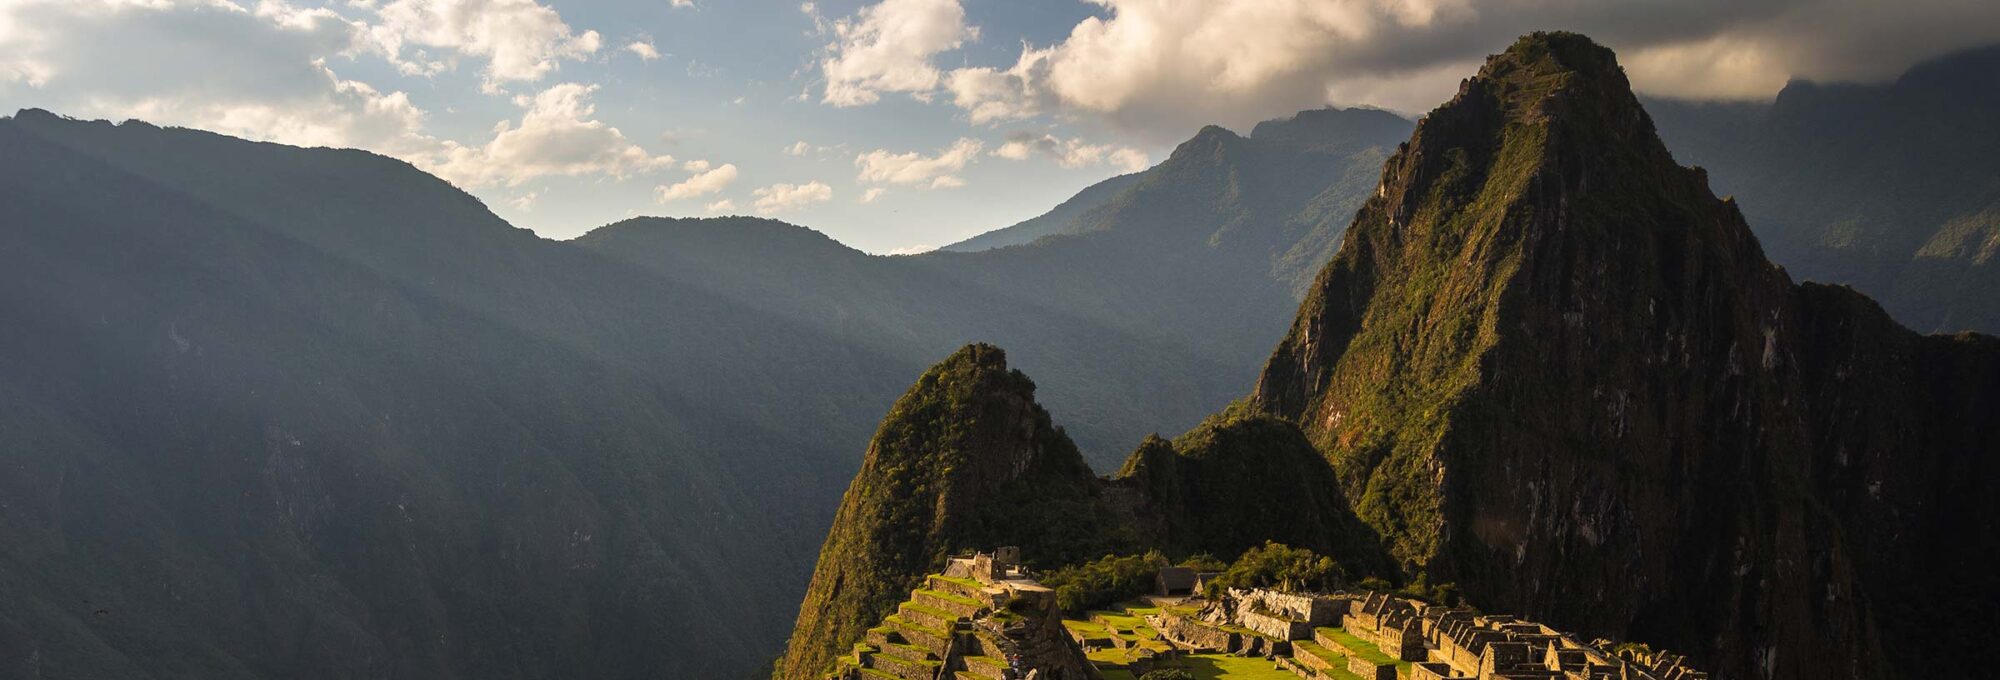 Classic Inca Trail 4 Days to Machu Picchu